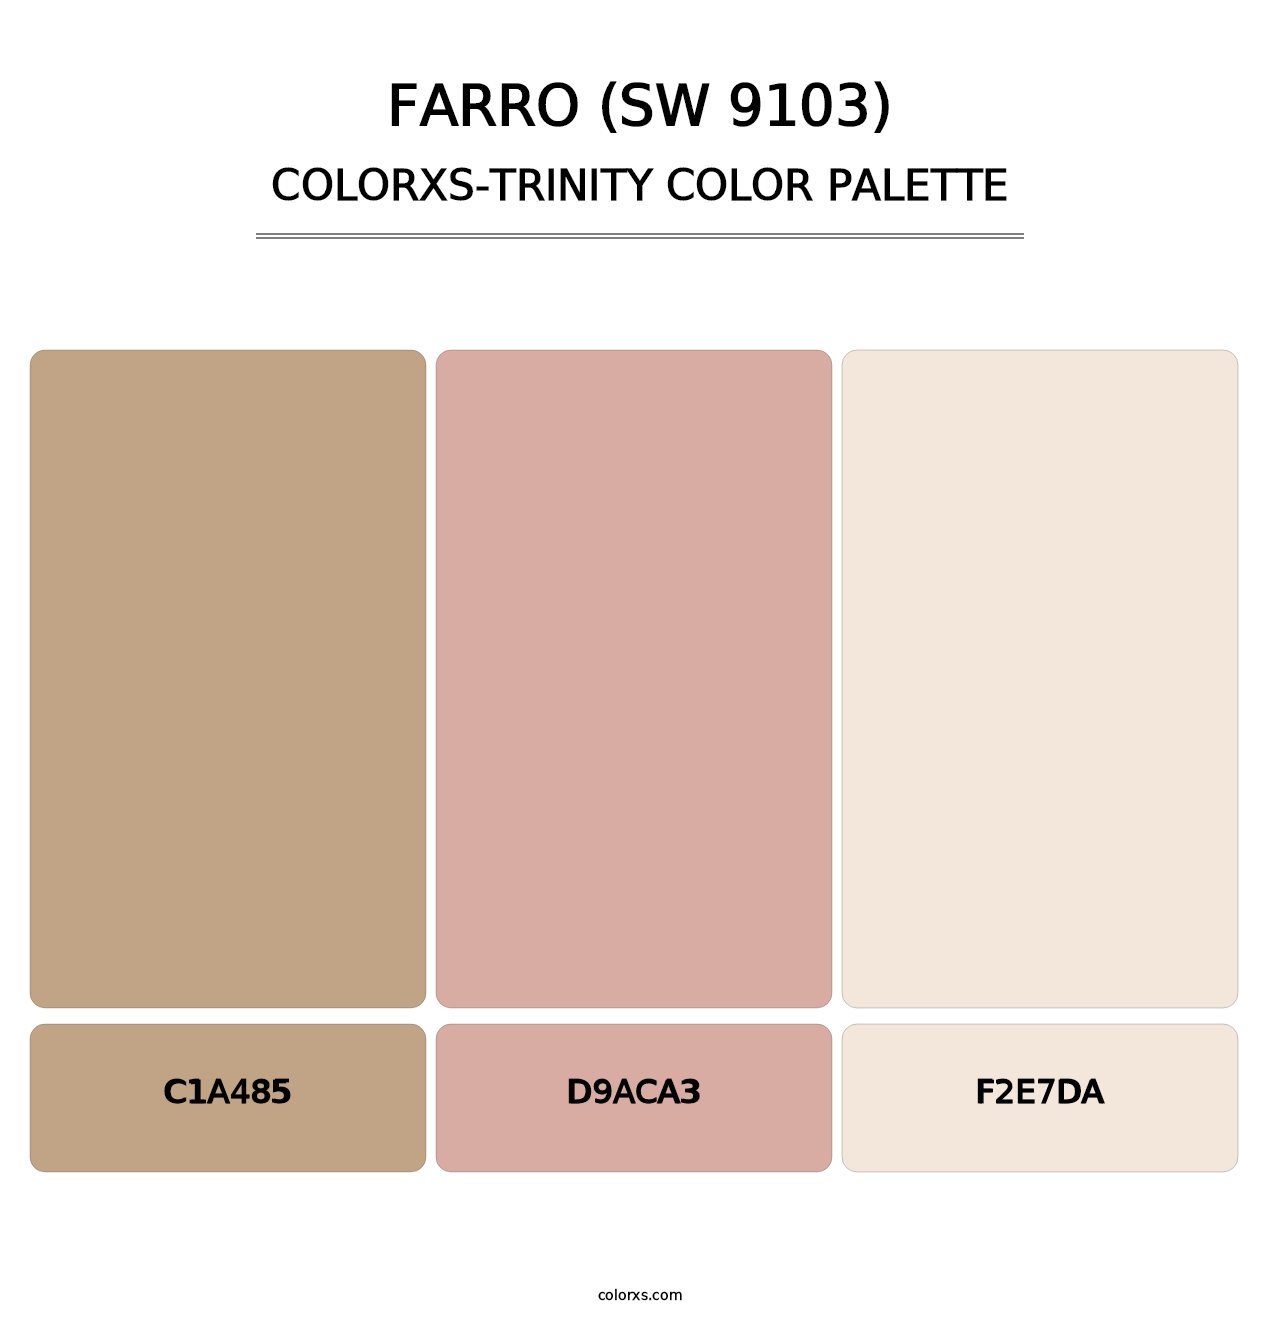 Farro (SW 9103) - Colorxs Trinity Palette